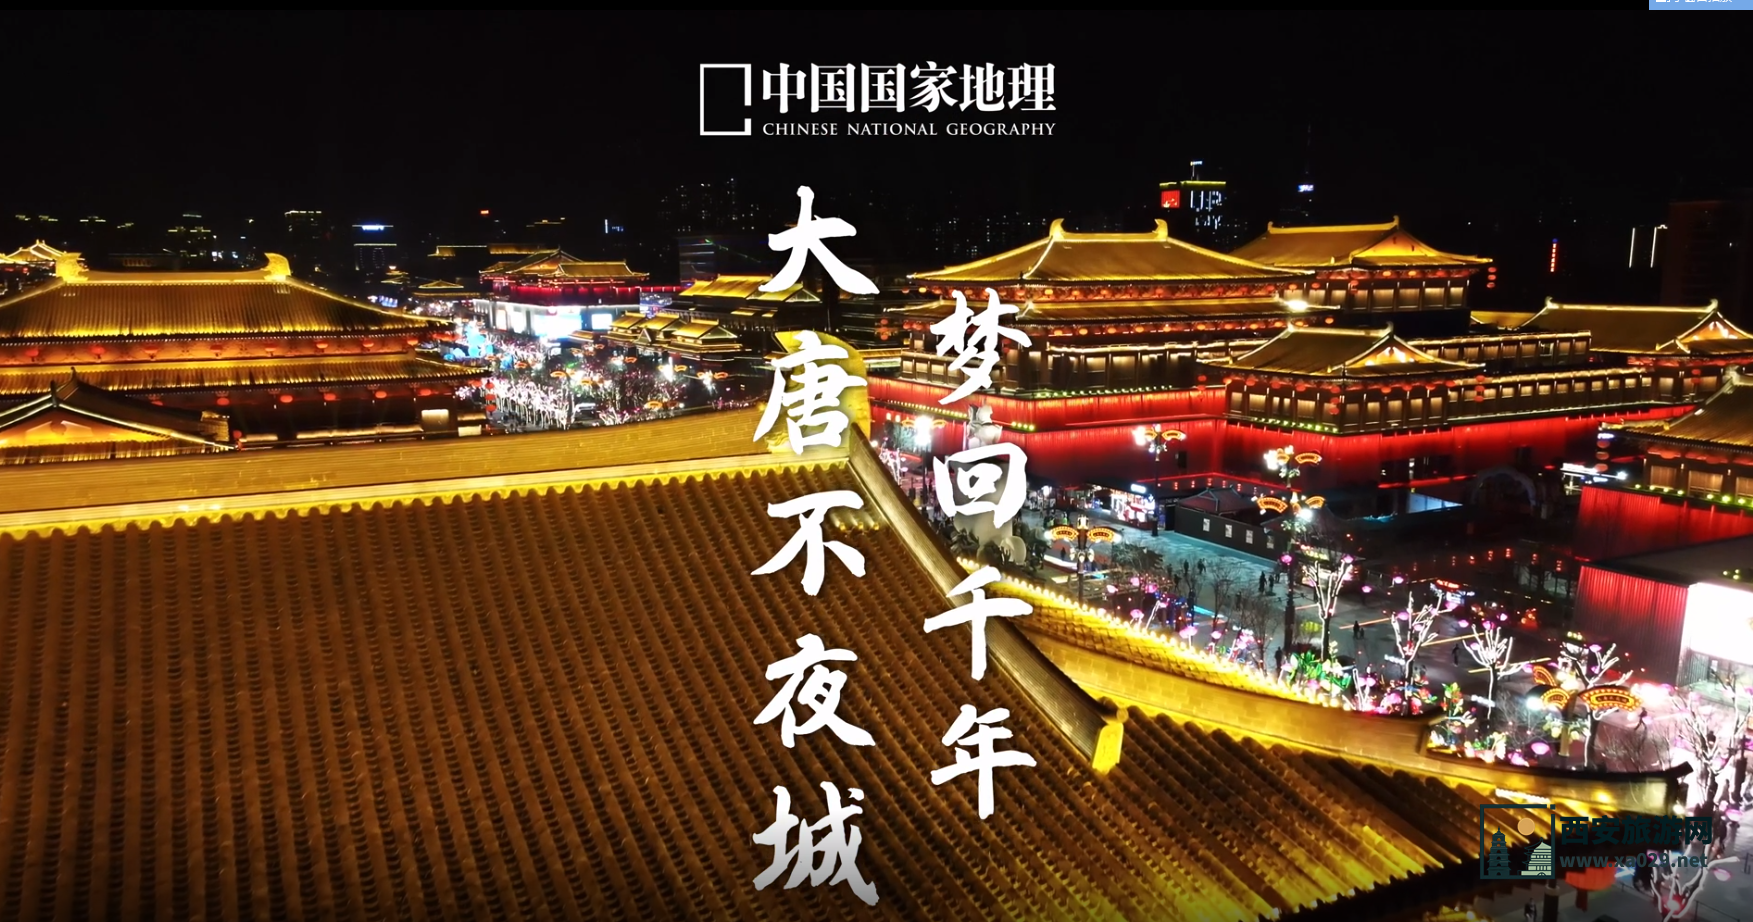 西安大唐不夜城图片 夜景视频 中国国家地理杂志拍摄